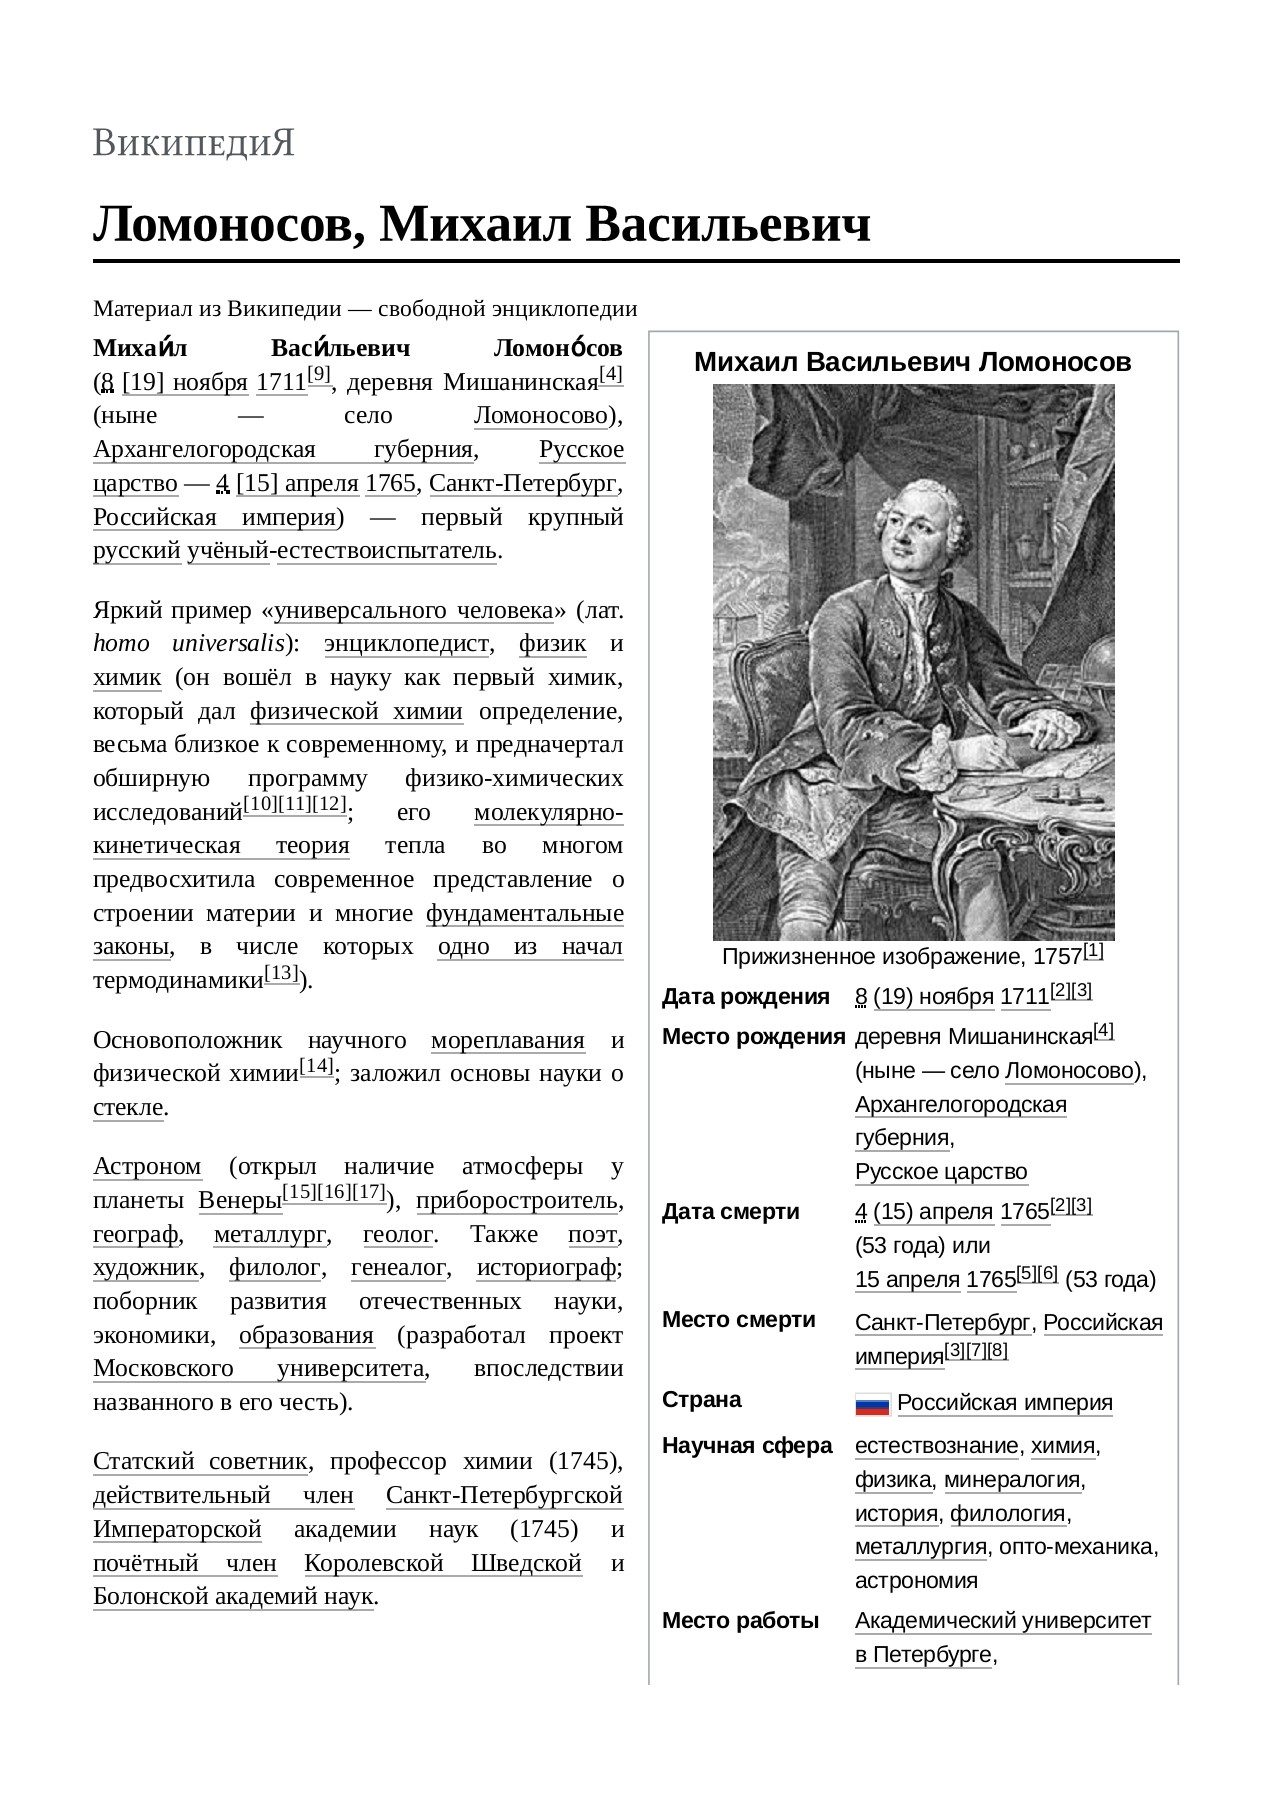 Открытия Ломоносова в химии: научные достижения вкладчика русской науки